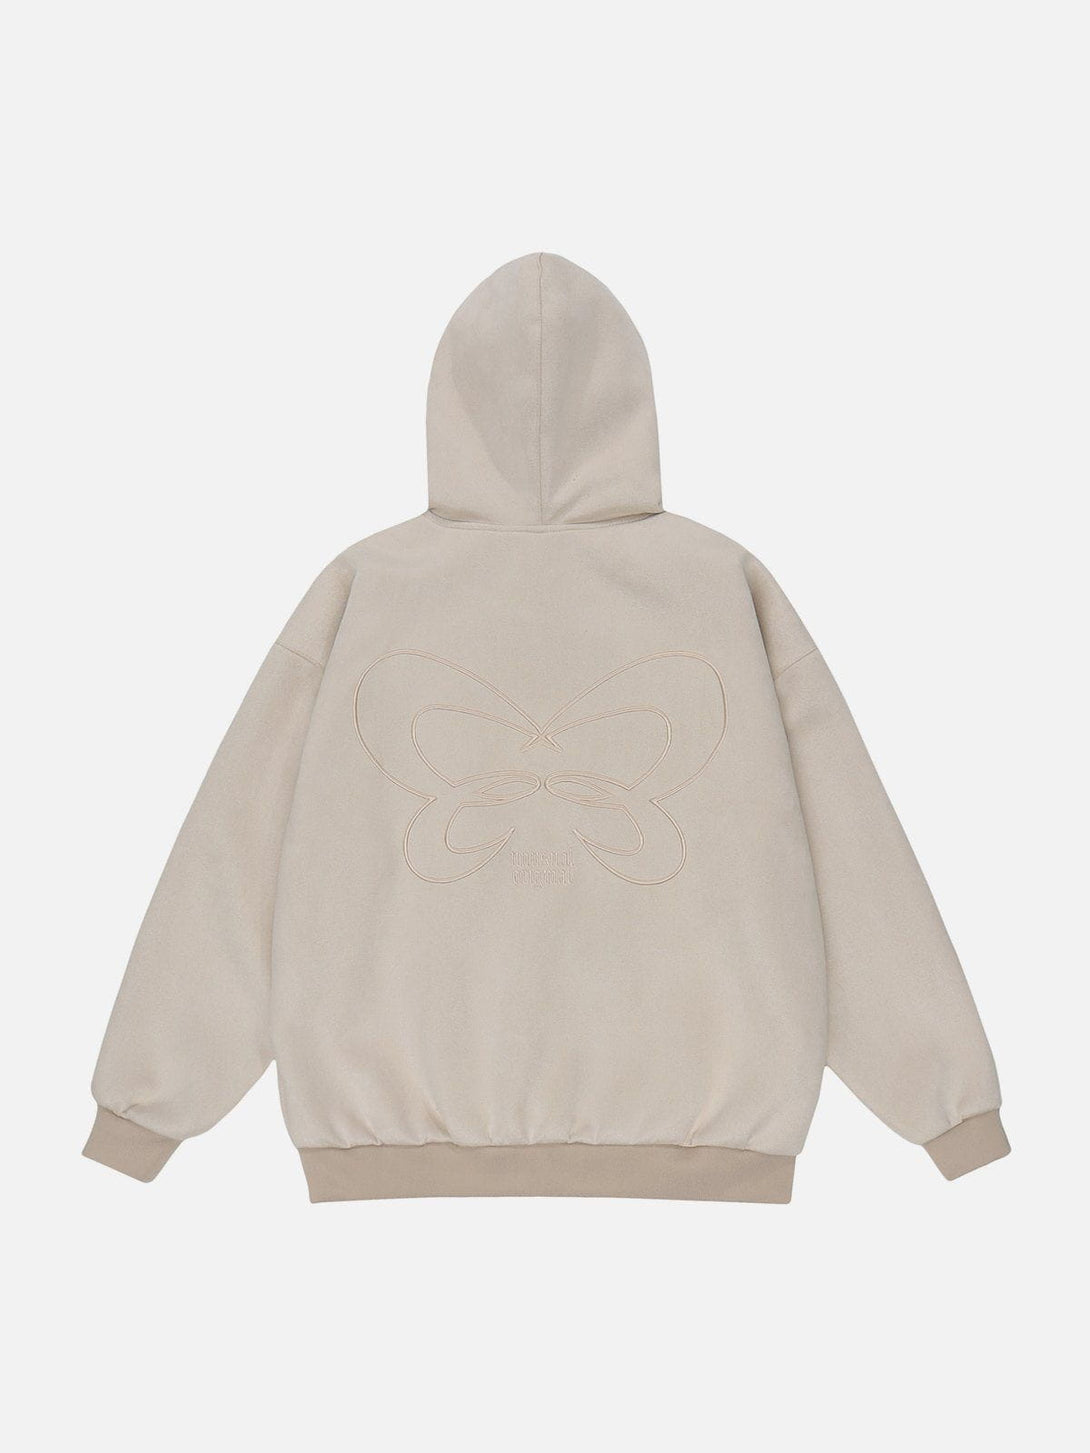 Majesda® - Butterfly Pattern Hoodie outfit ideas streetwear fashion